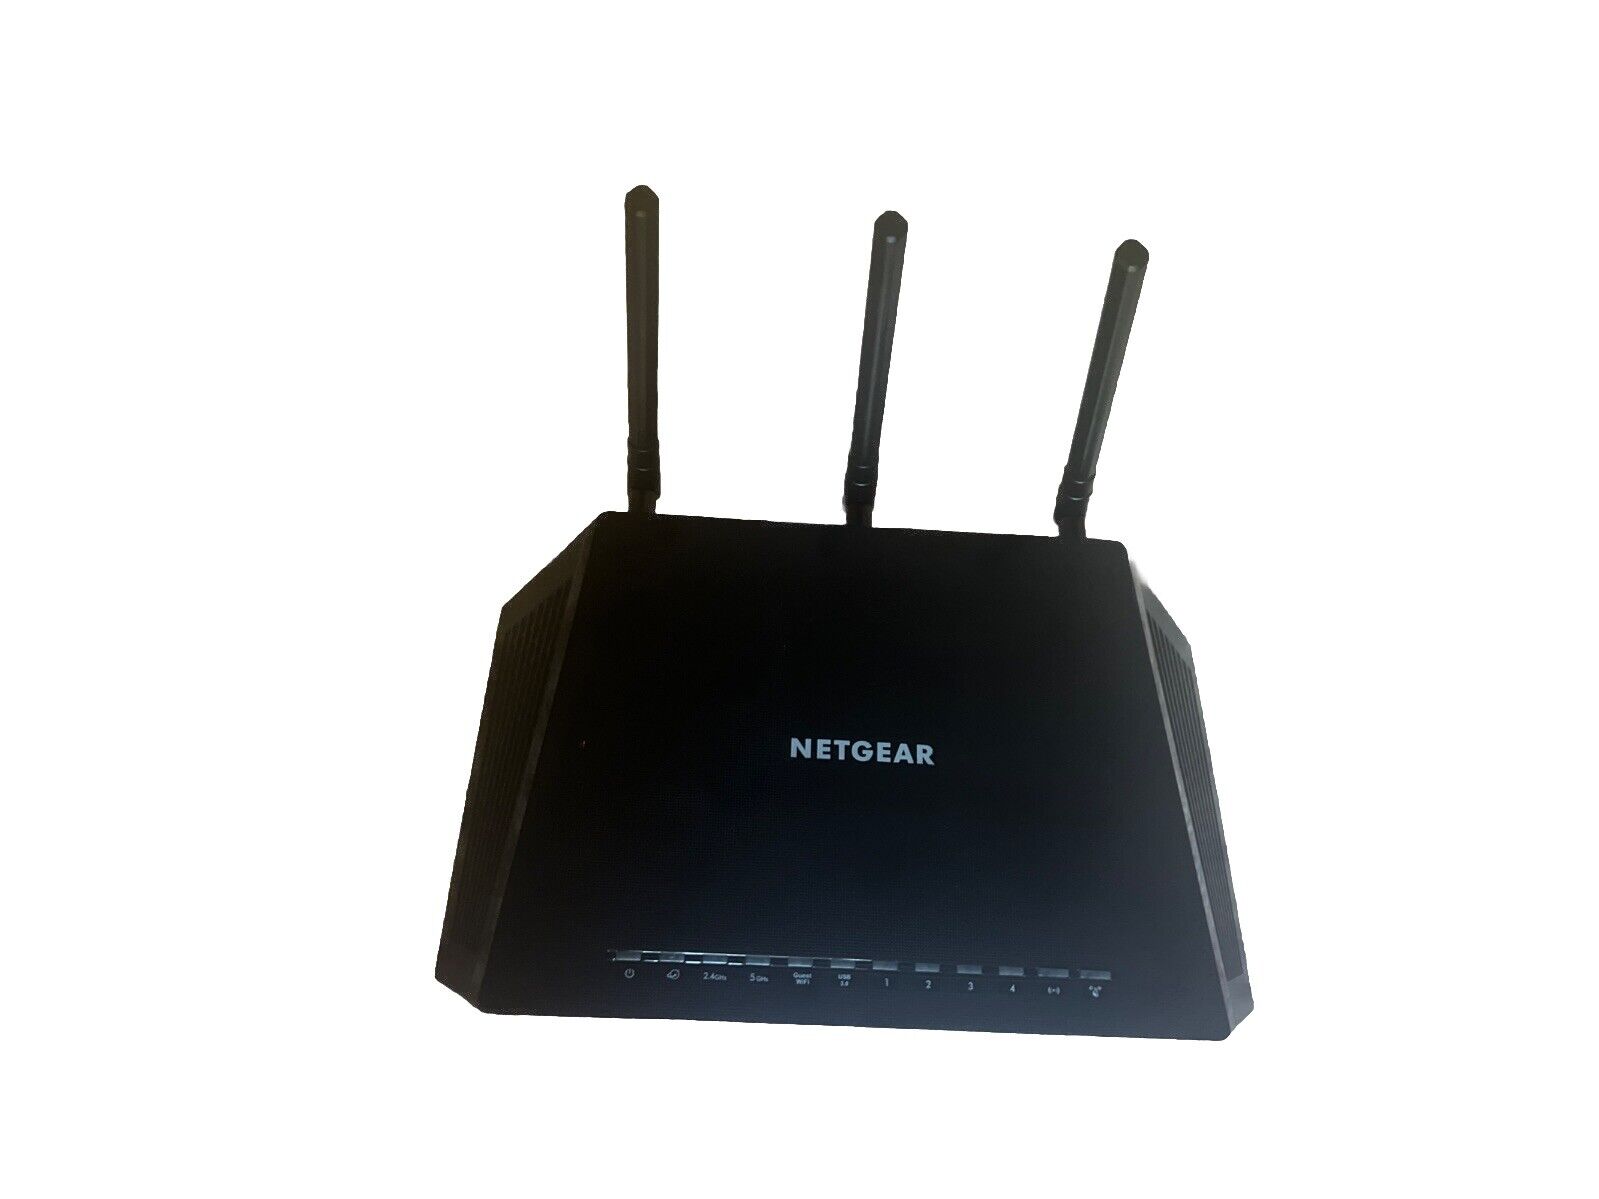 NETGEAR R7600 Nighthawk AC1750 Smart WiFi Router - R6700-100NAS